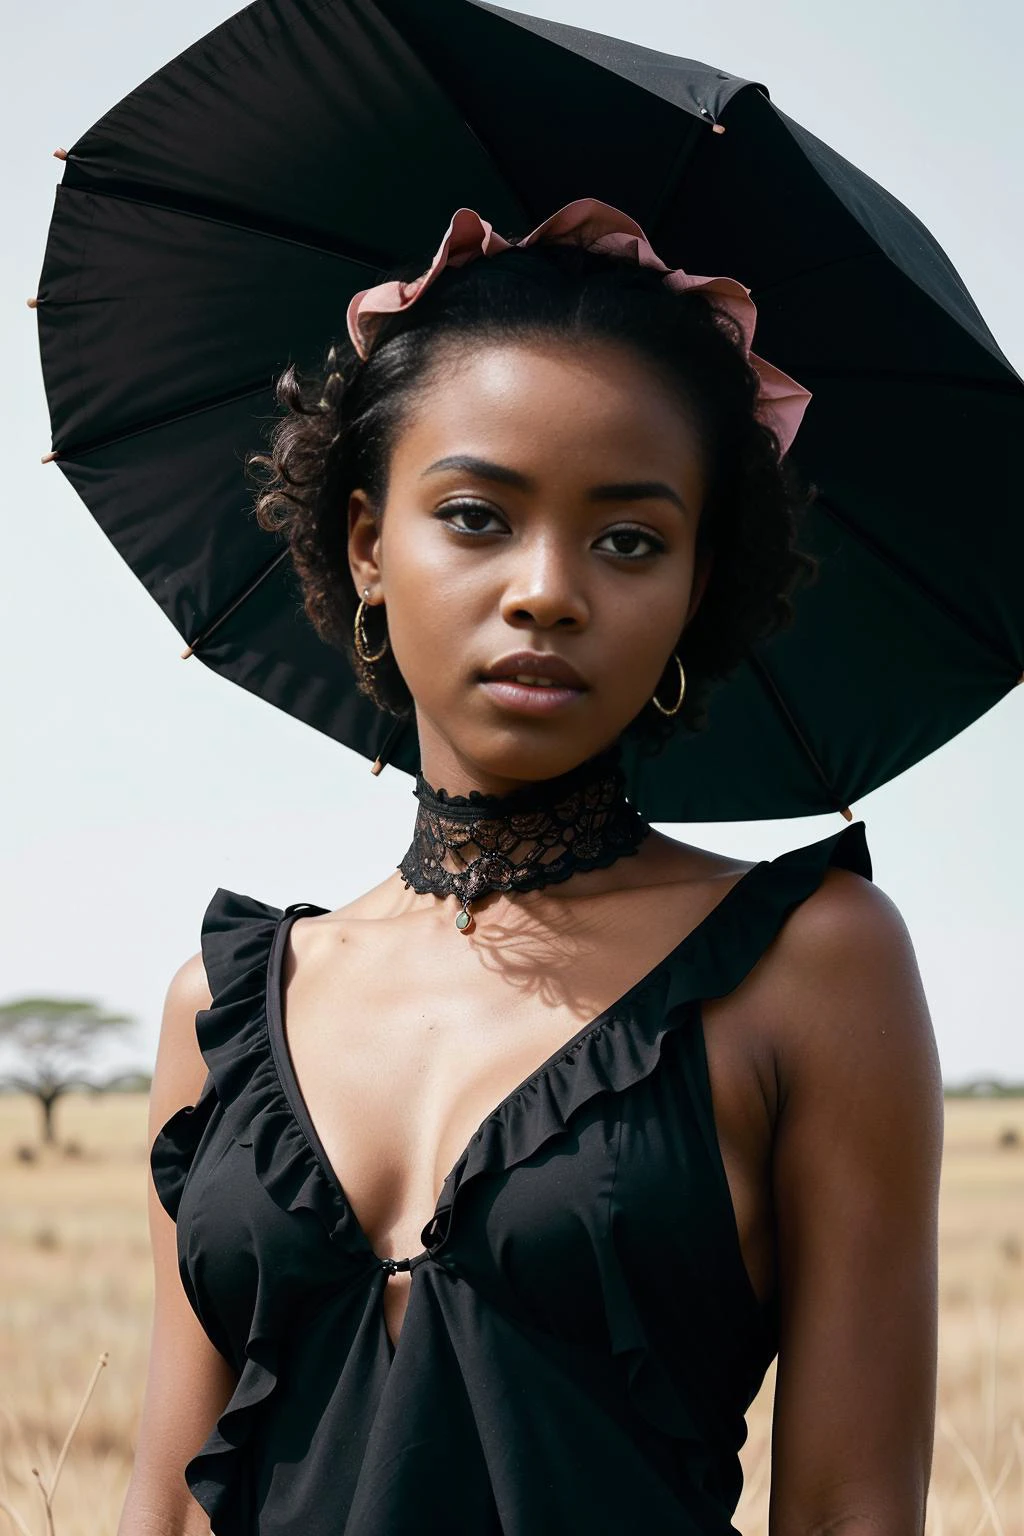 (realistisch, preisgekröntes Farbfoto) Nahaufnahme nackten Körper Porträt eines jungen (schwarzes afrikanisches Mädchen:1.2) Modell (mit langem pastellrosa asymmetrischem Haarschnitt:1.2), (Arbeit im atemberaubenden Serengeti Nationalpark in Tansania mit Safari Wildlife und weiten Ebenen:1.1), (Gothic-Stil mit Rüschenkleidern und Spitzensonnenschirmen tragen:1.2), widerstrebend entblößt sie ihre nackte Kleine , (smug), (Hände auf dem Kopf:1.1),  (Leuchtende Low-Key-Beleuchtungsfotografie:1.1), Ästhetik mit hohem Kontrast, (Fokus auf die Augen), engelhaft, schönes Gesicht,(harte Schatten, pechschwarzer Untergrund, unlit,  Dunkles Thema, Licht dimmen, tiefer Kontrast:1.2), (Hintergrund im Fokus)